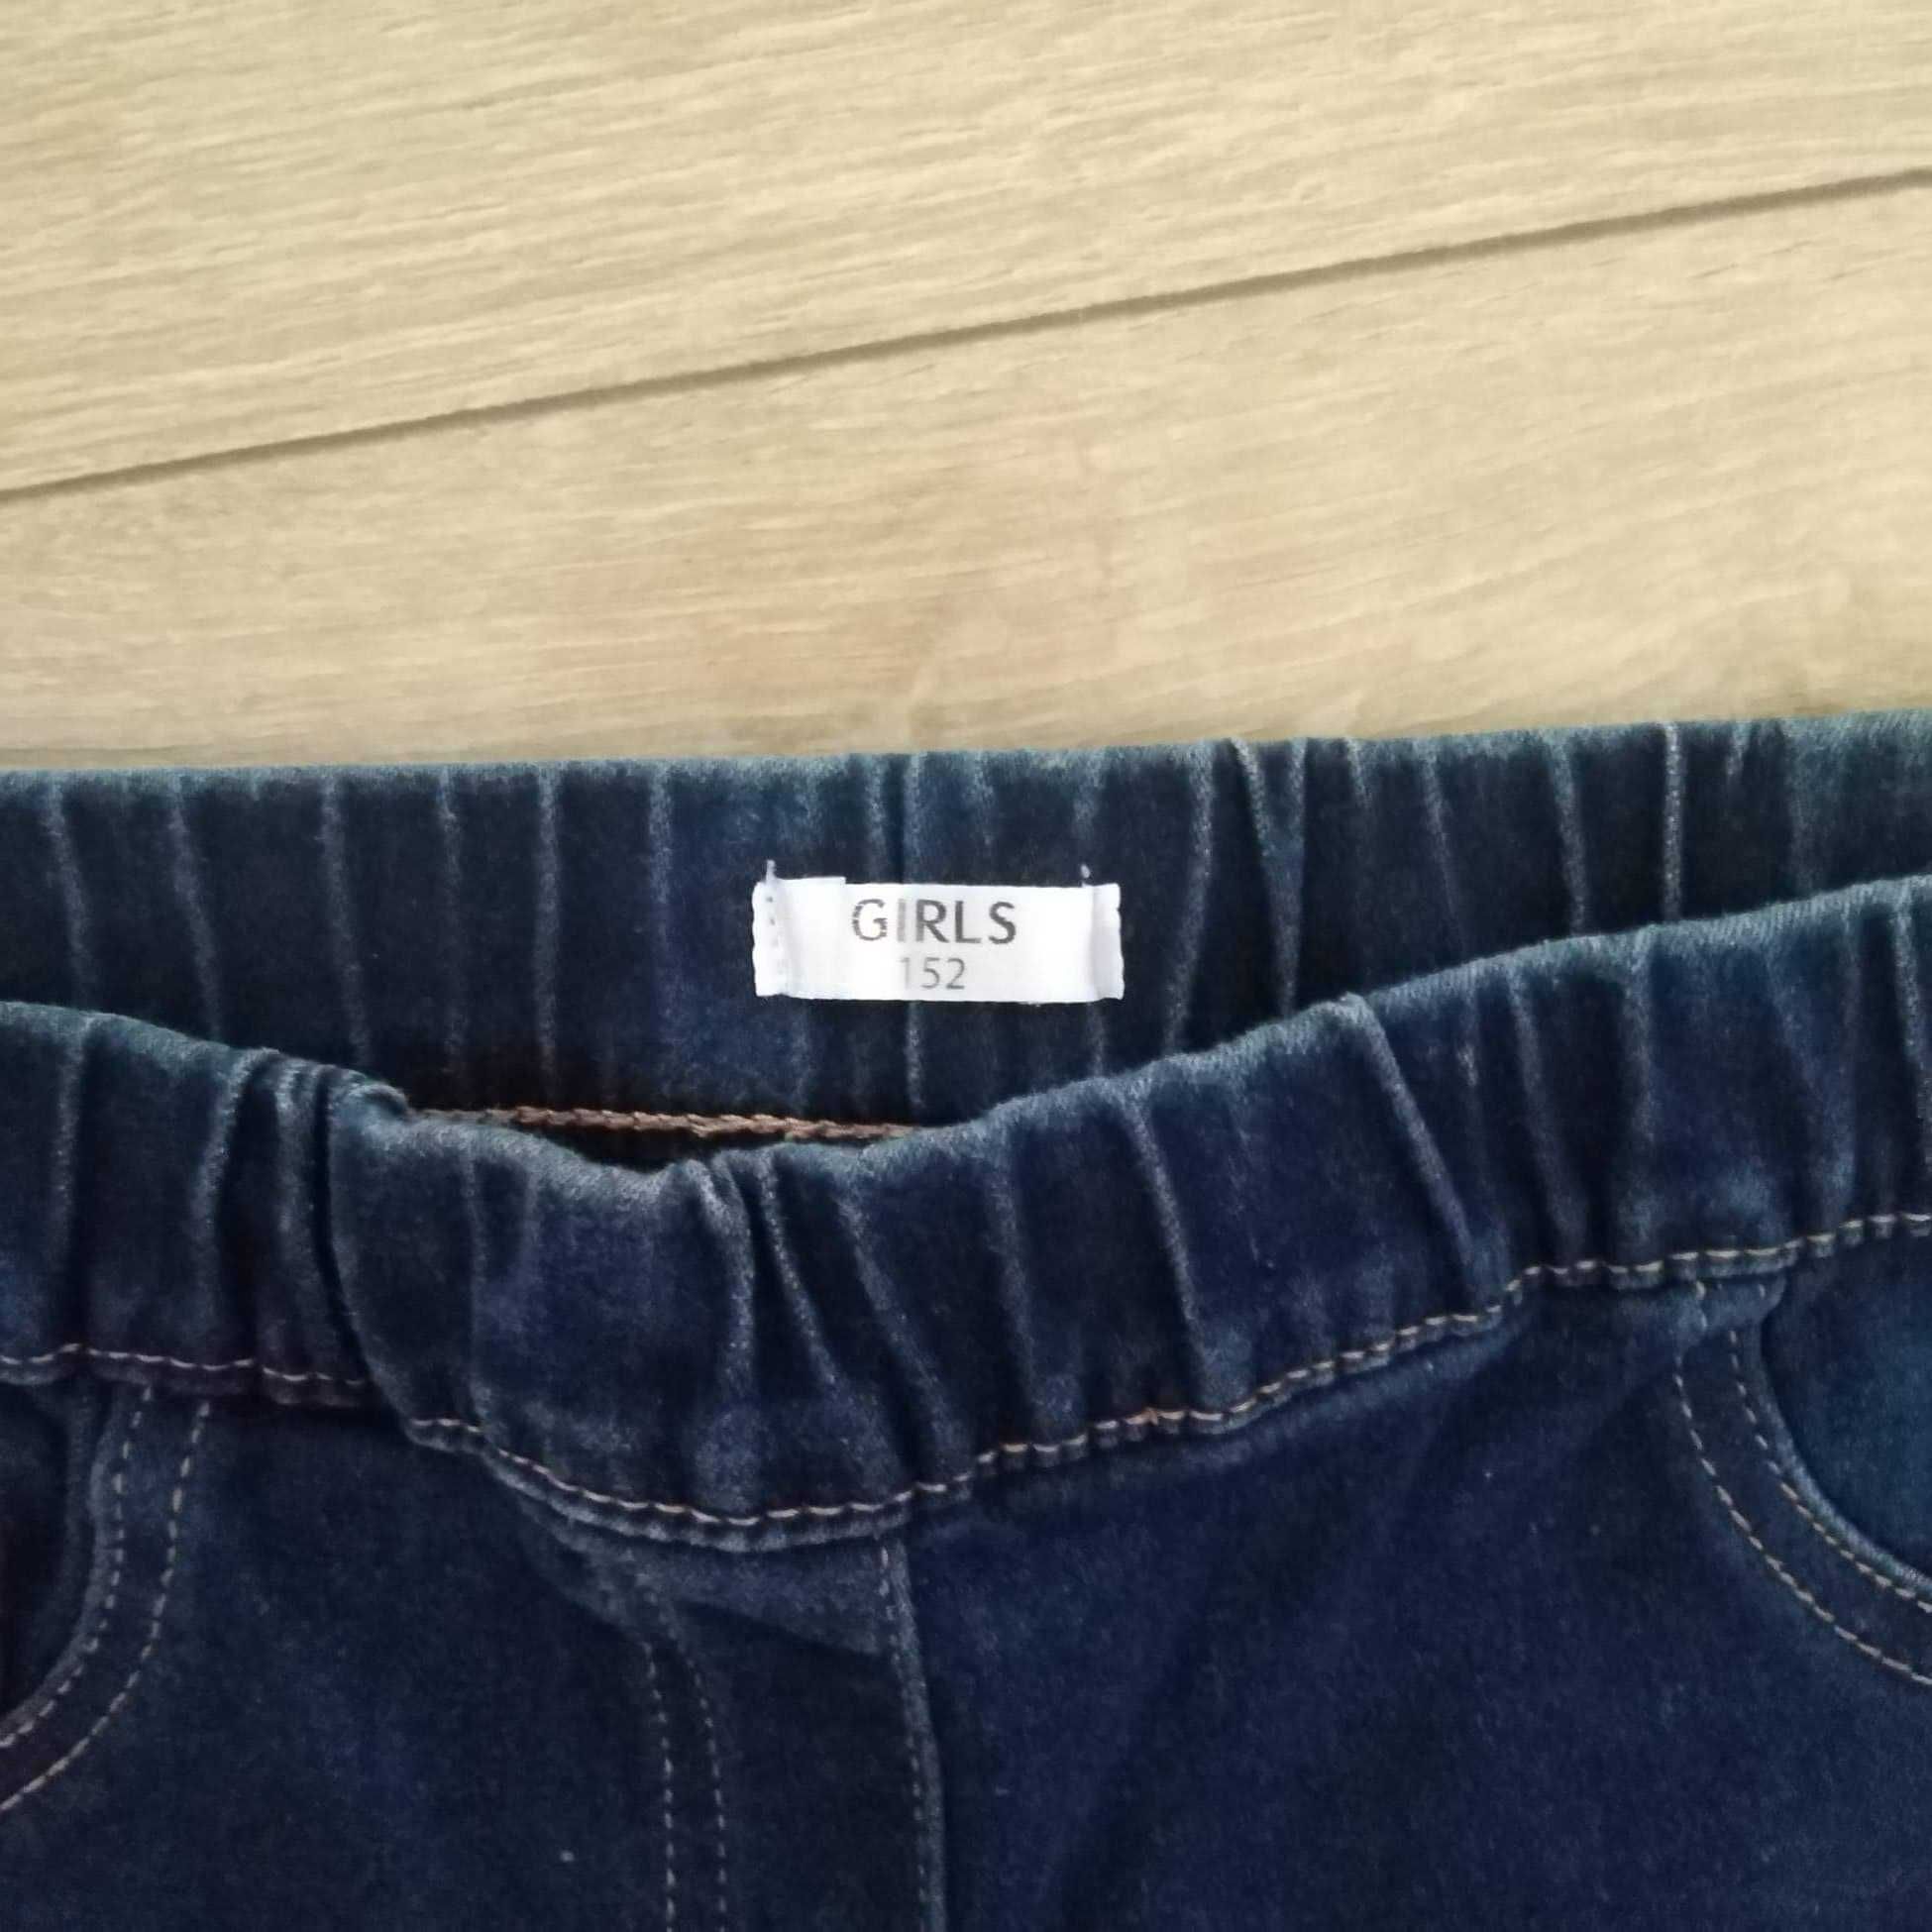 Spodnie jeansy granatowe dla dziewczynki roz152 stan idealny